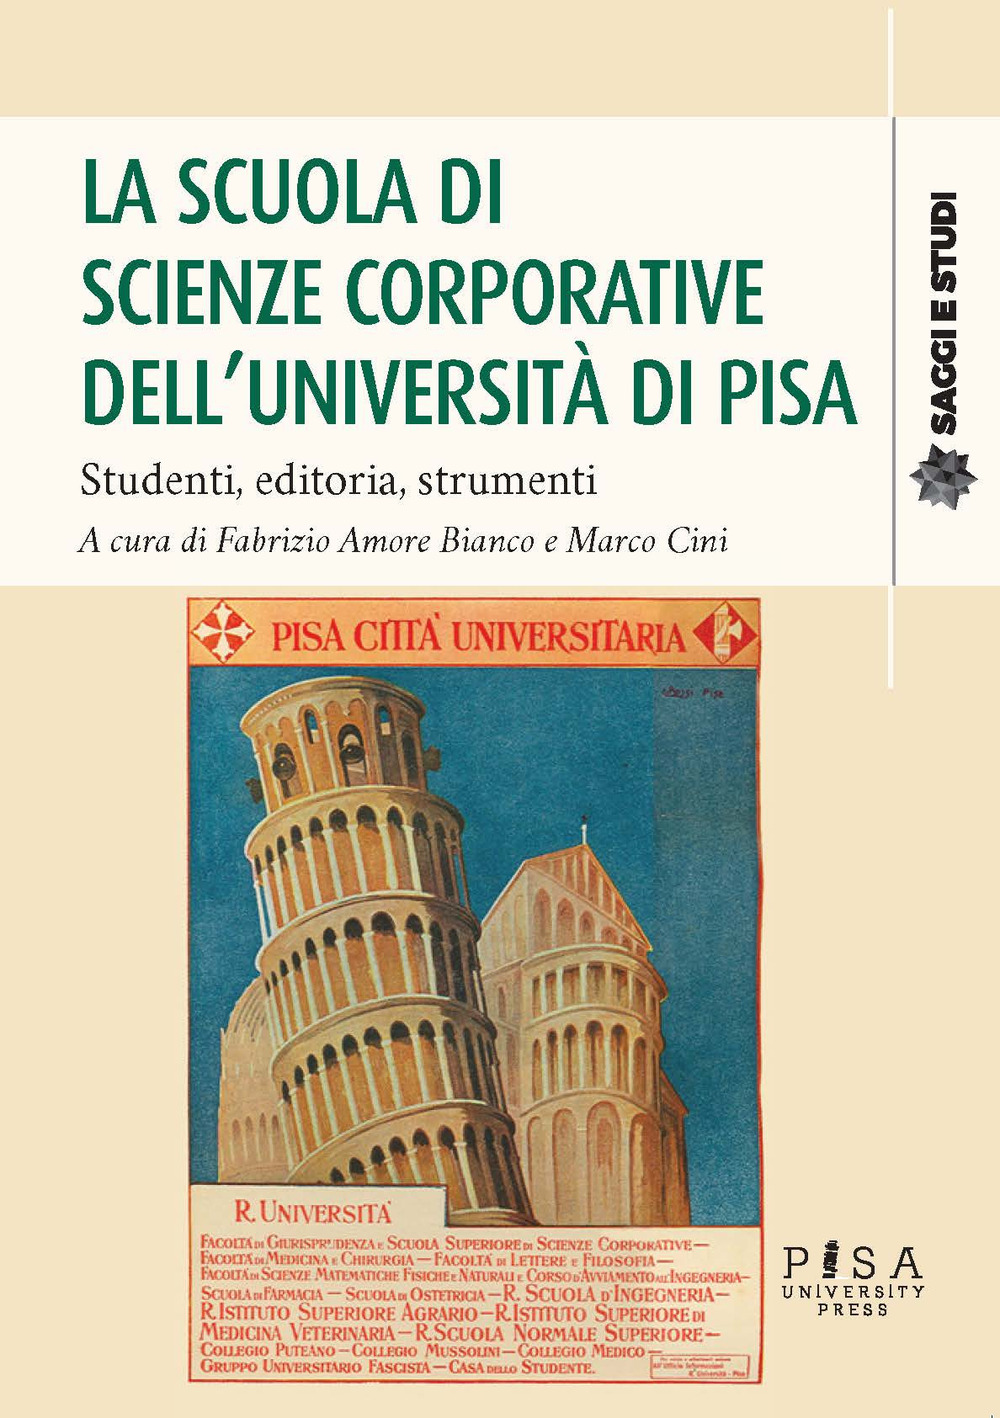 Image of La scuola di scienze corporative dell'Università di Pisa